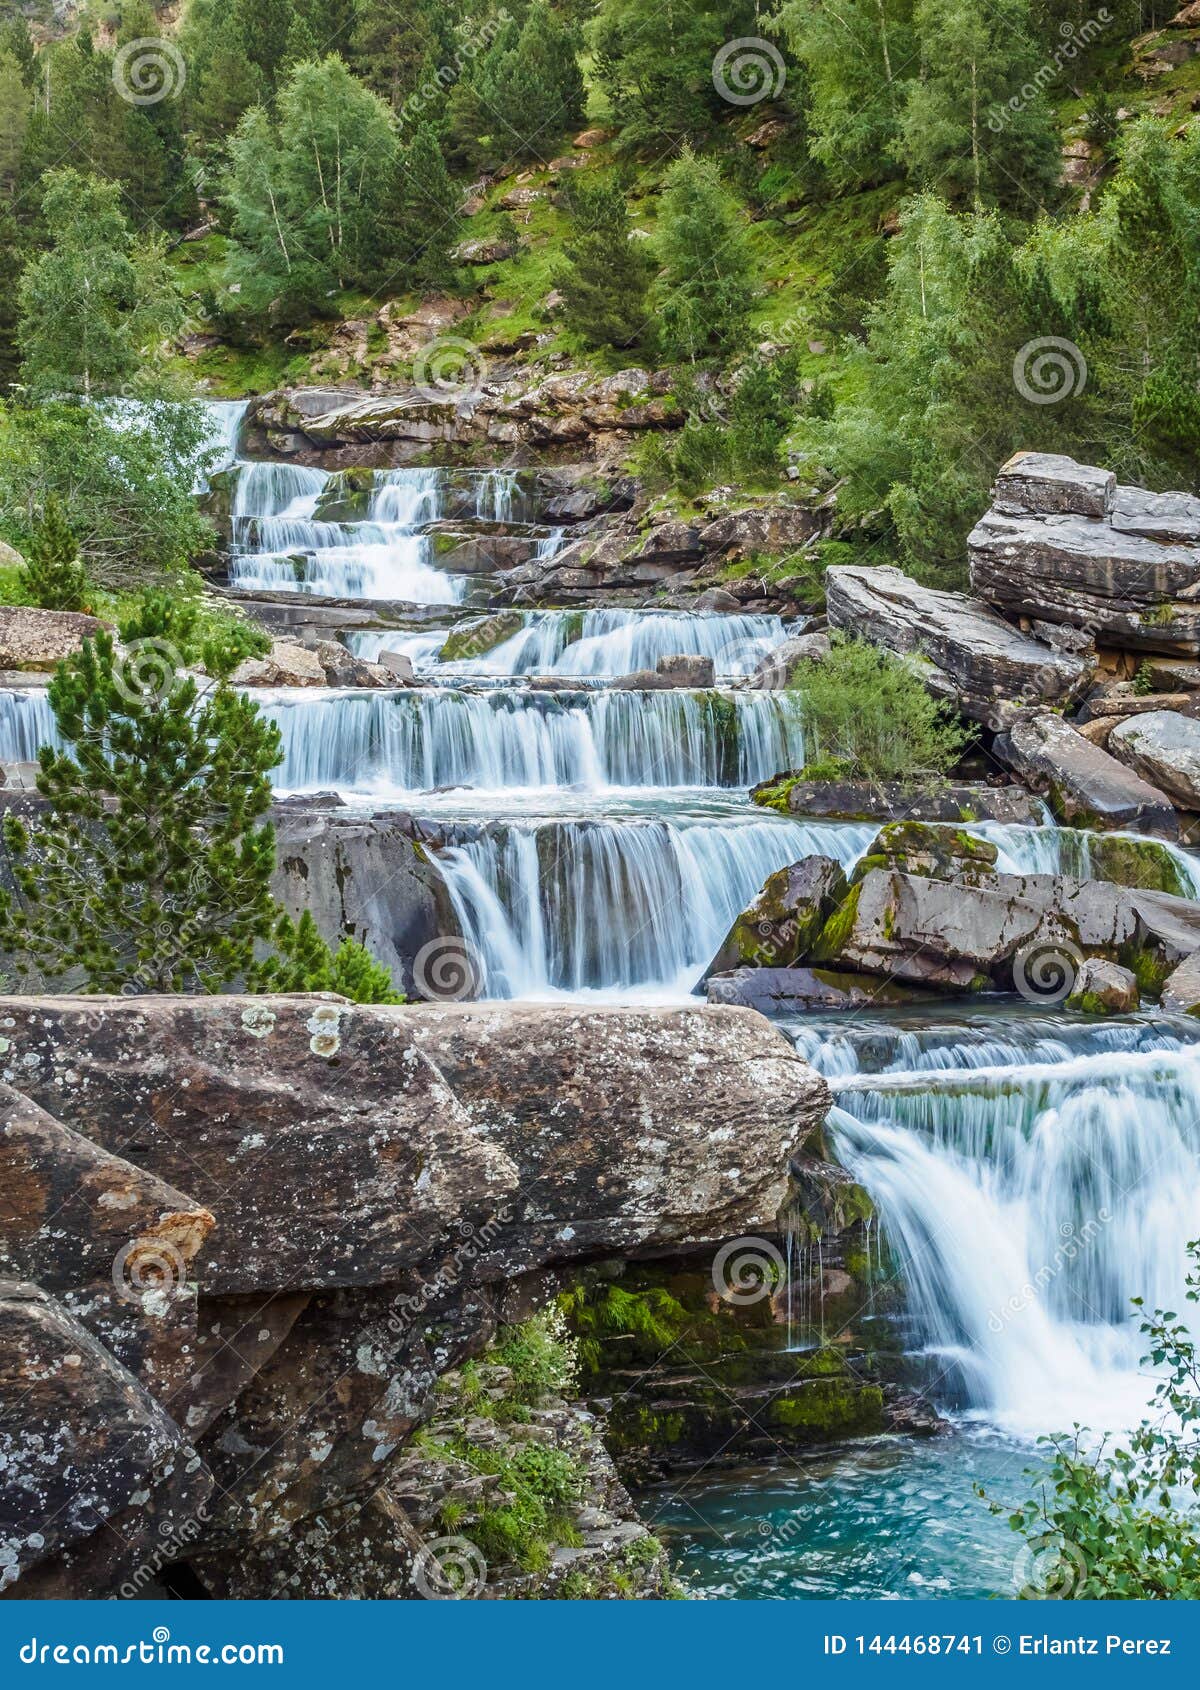 waterfalls in ordesa and monte perdido national park in pyrenees range in spain, huesca, gradas soaso vertical